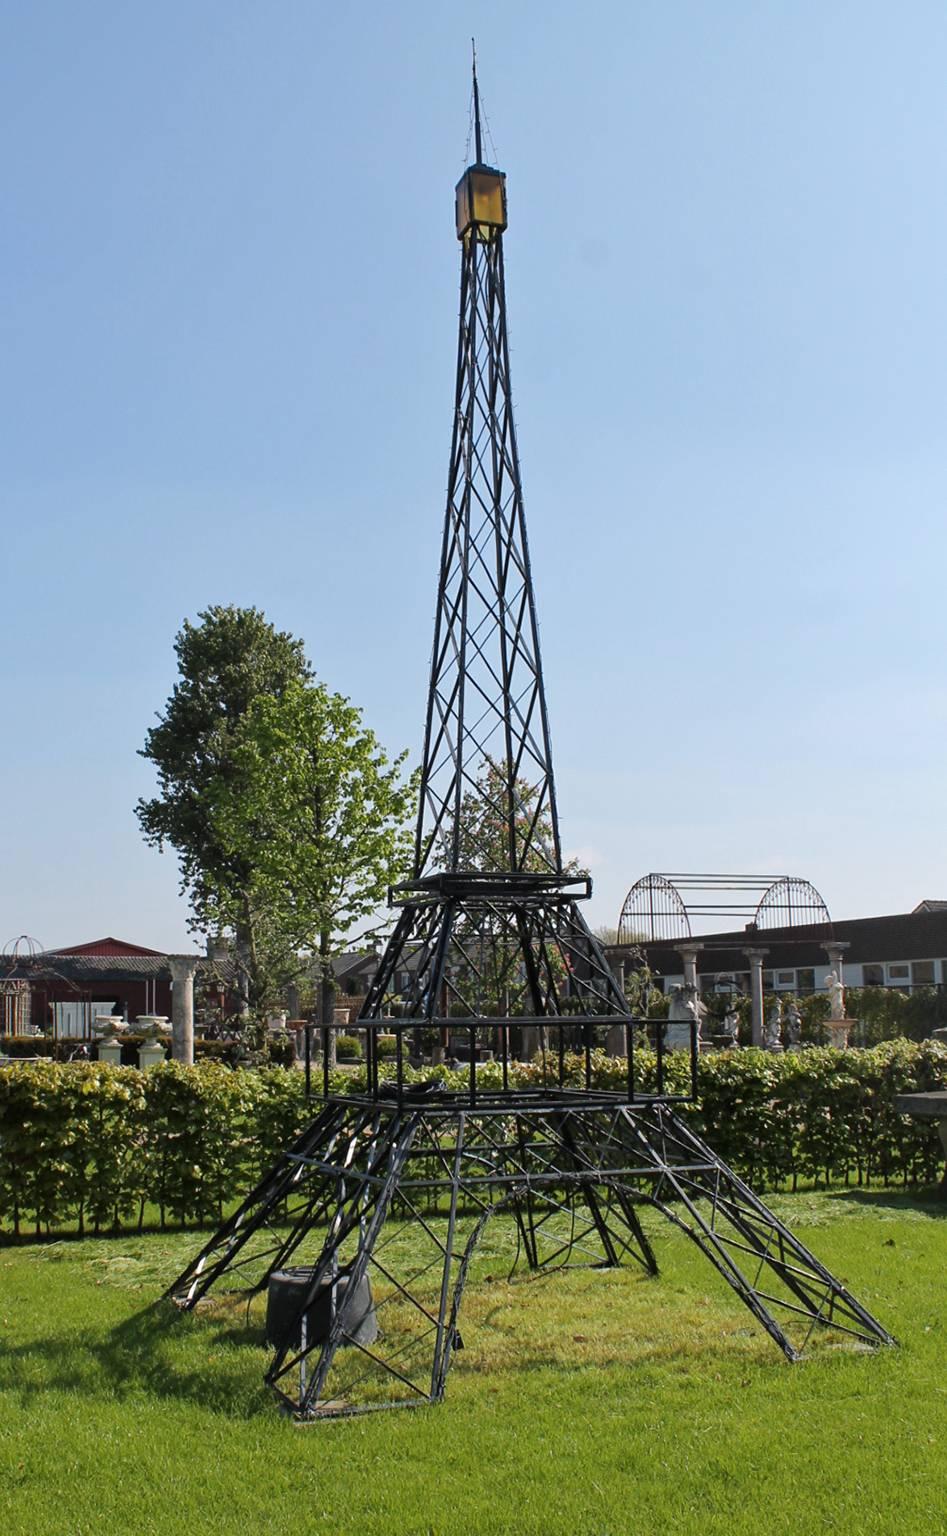 Vous aimez Paris et la France.

Alors vous devriez acheter cette très belle Tour Eiffel vintage.
Il s'intègrera parfaitement dans votre parc !